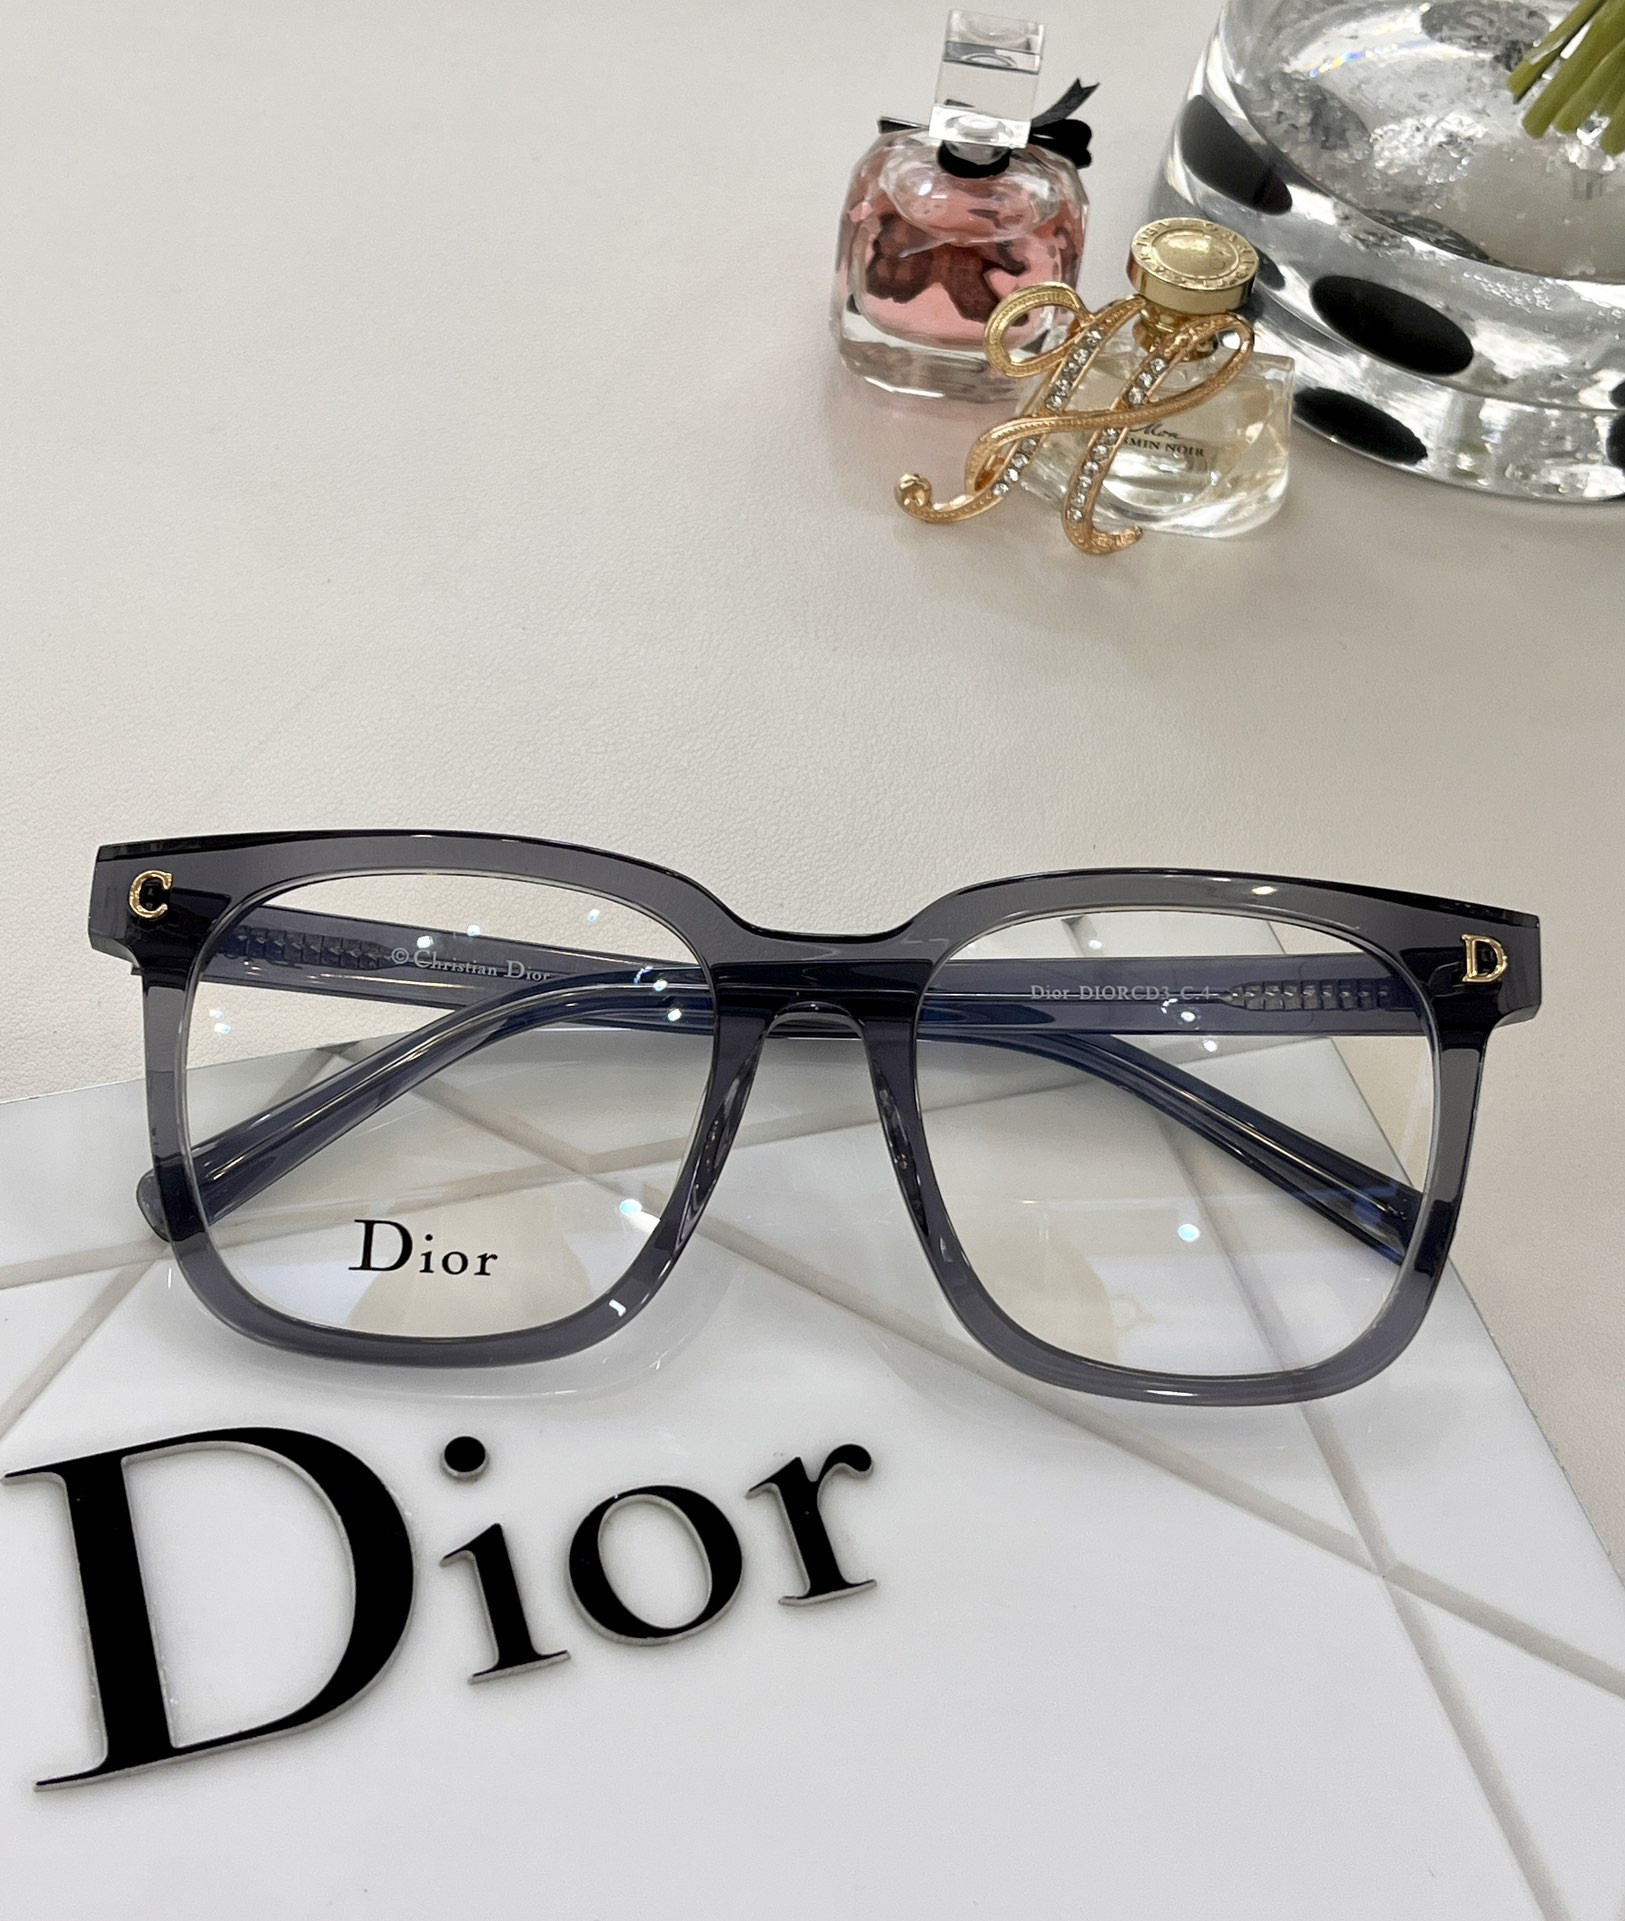 Tổng Hợp Mẫu Mắt Kính Dior Siêu Cấp Homme Blacktie232